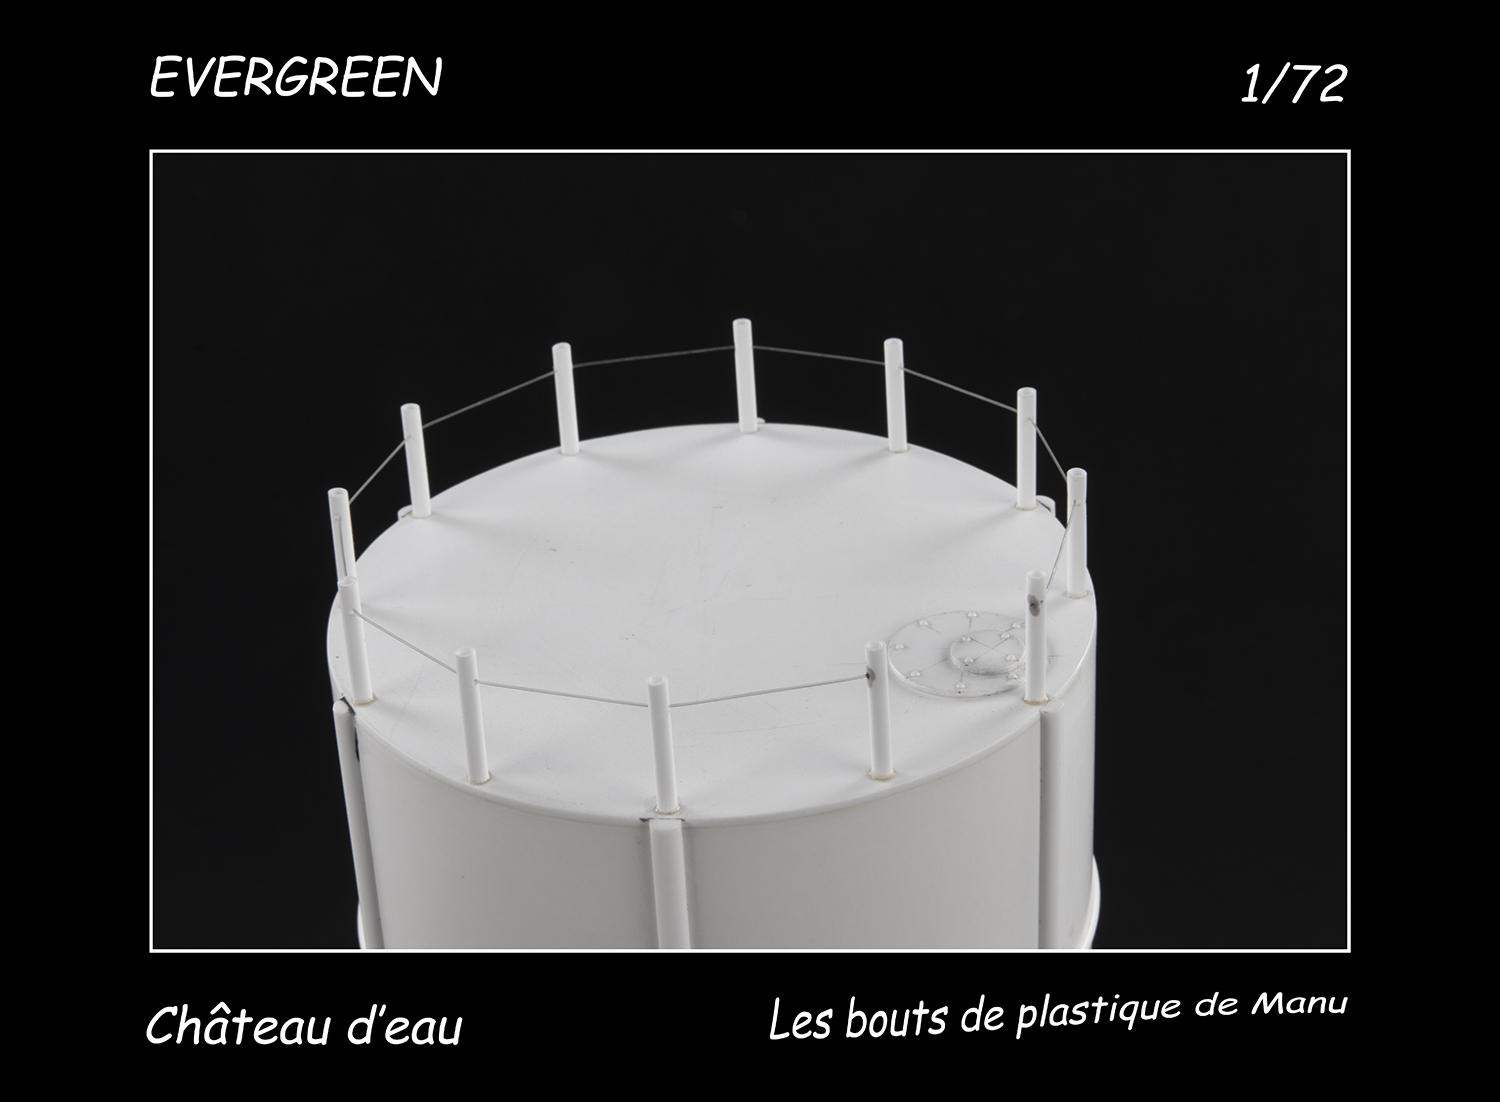 [Evergreen] Château d'eau - Le meilleur reste à venir Wtw2